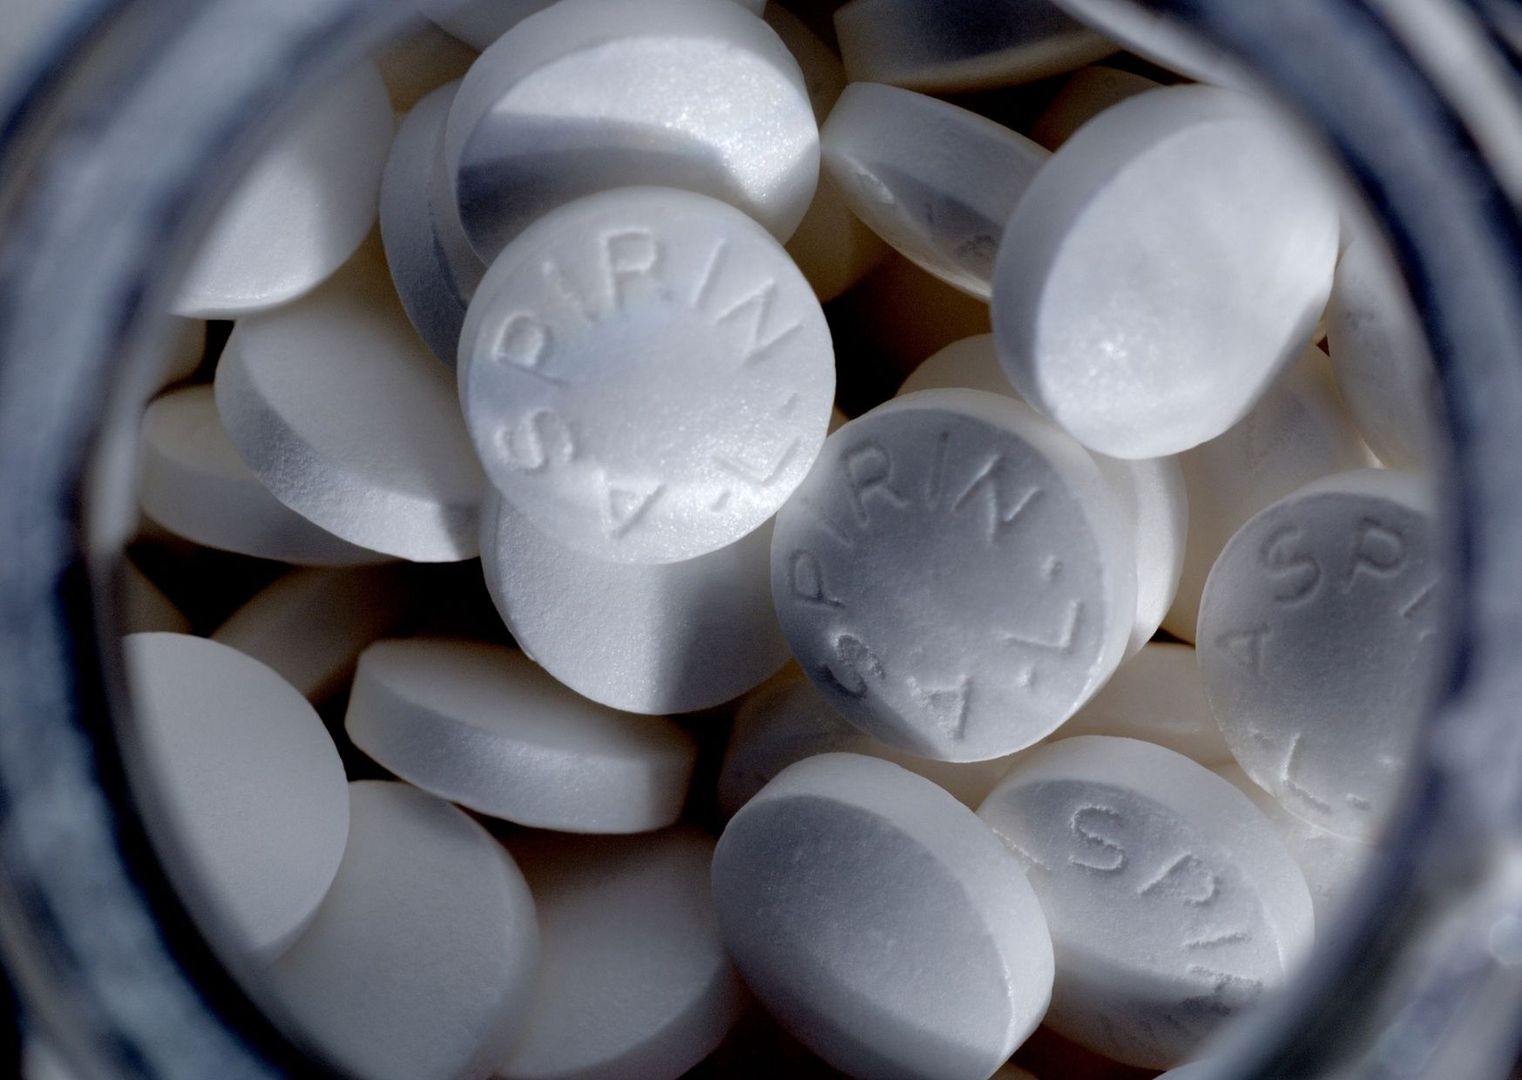 Aspiryna chroni przed udarem i zakrzepami